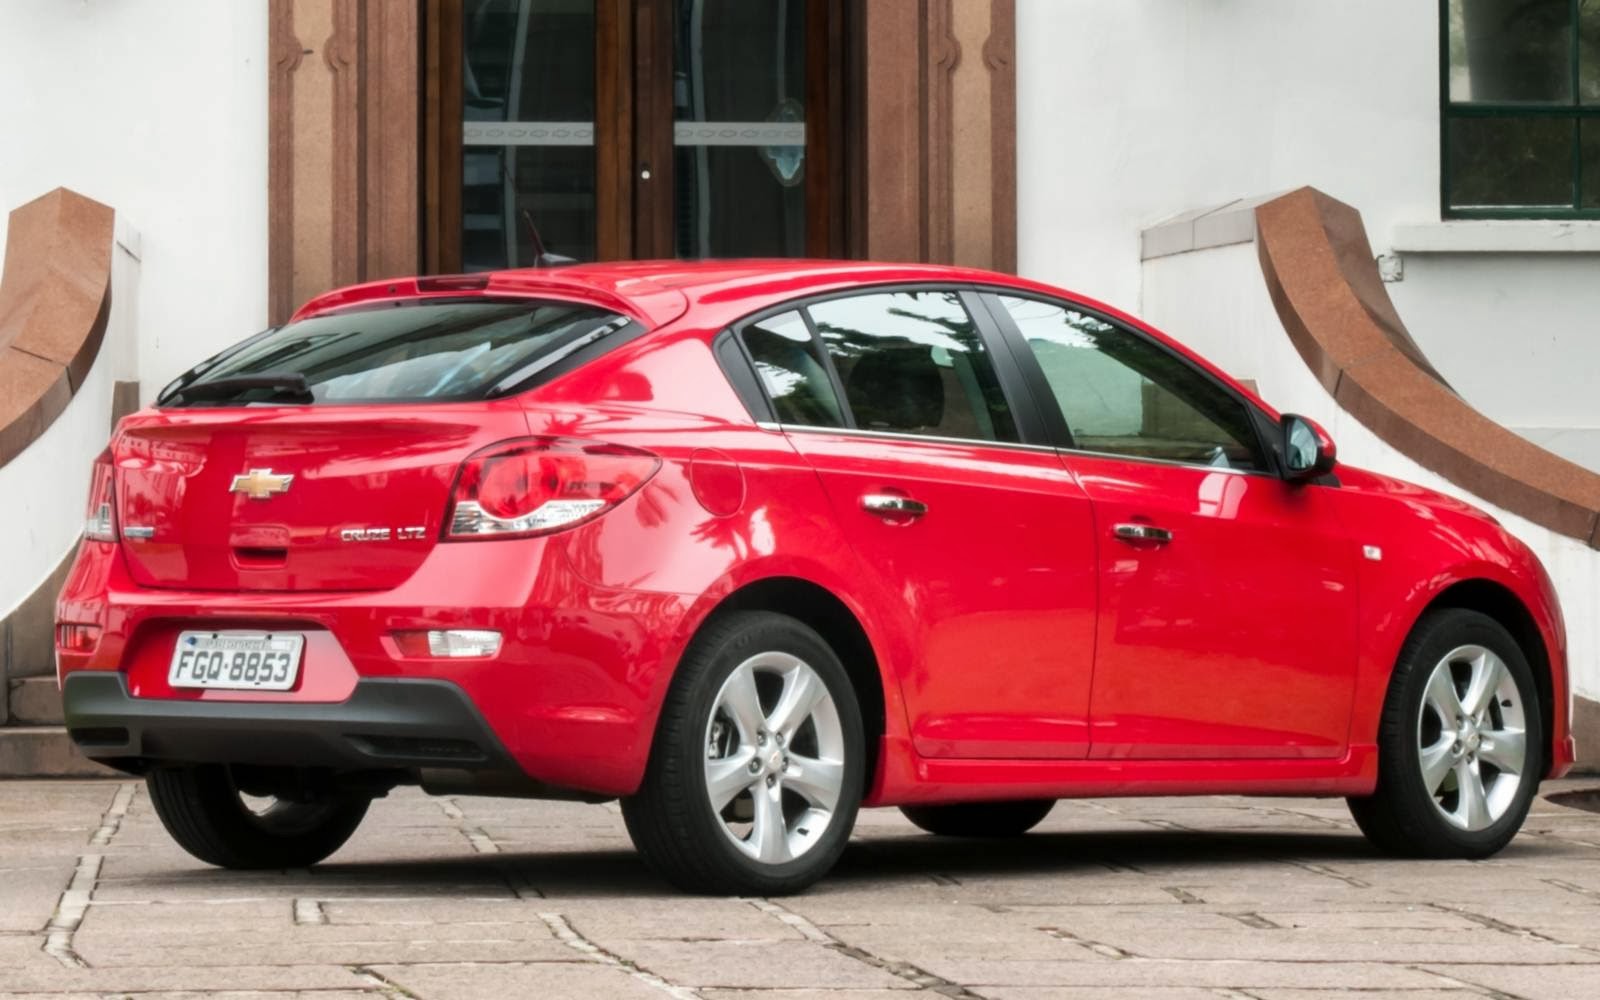 GM Cruze 2014 Sedã e Hatch: fotos, preços e especificações